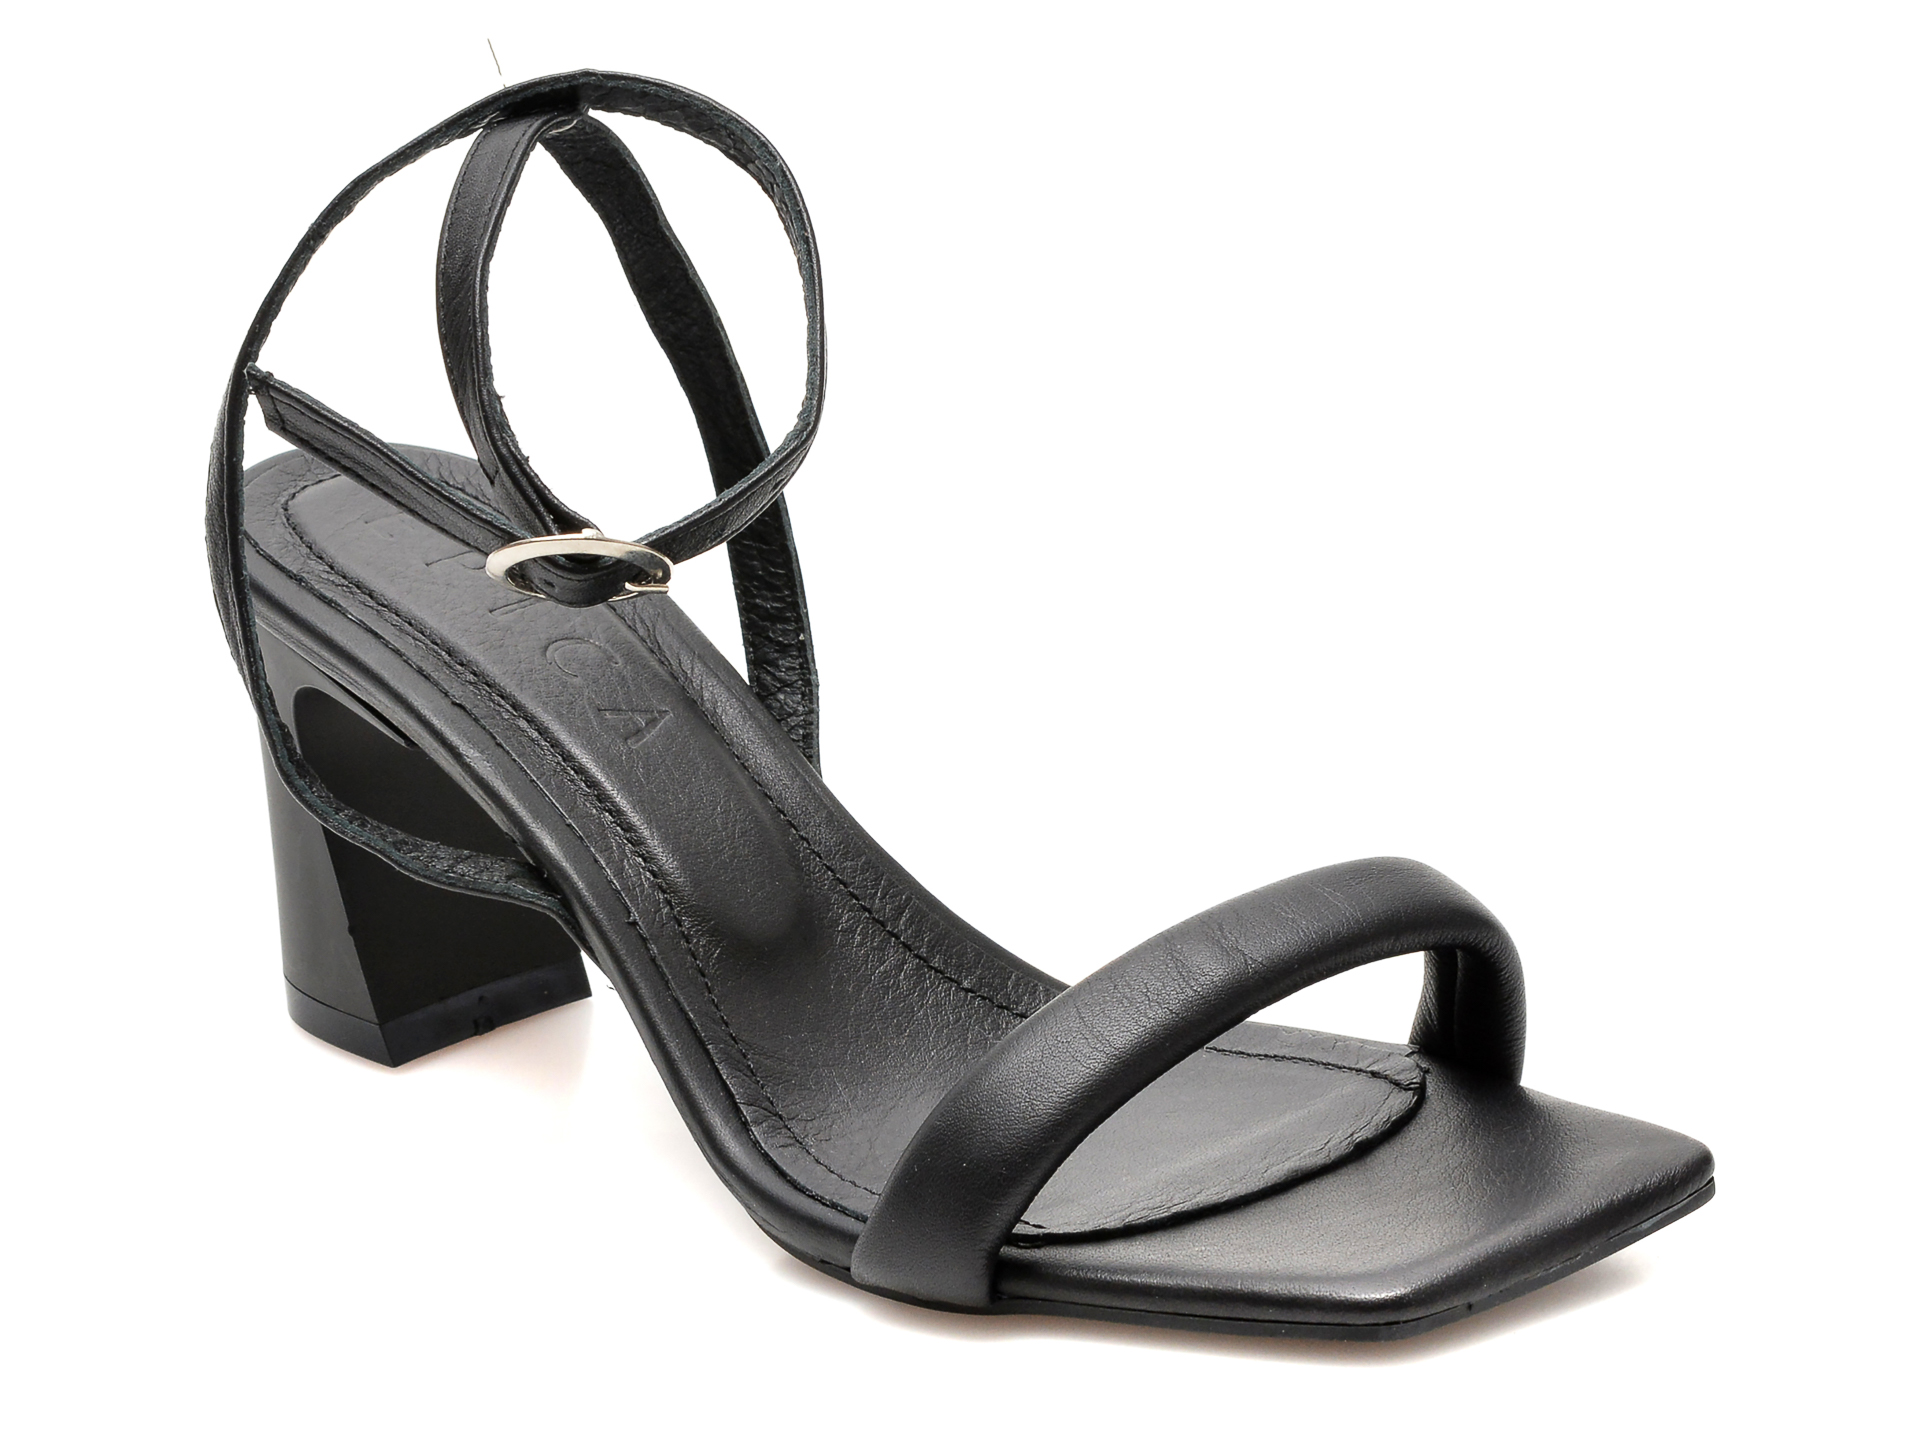 Sandale EPICA negre, 520, din piele naturala /femei/sandale INCALTAMINTE